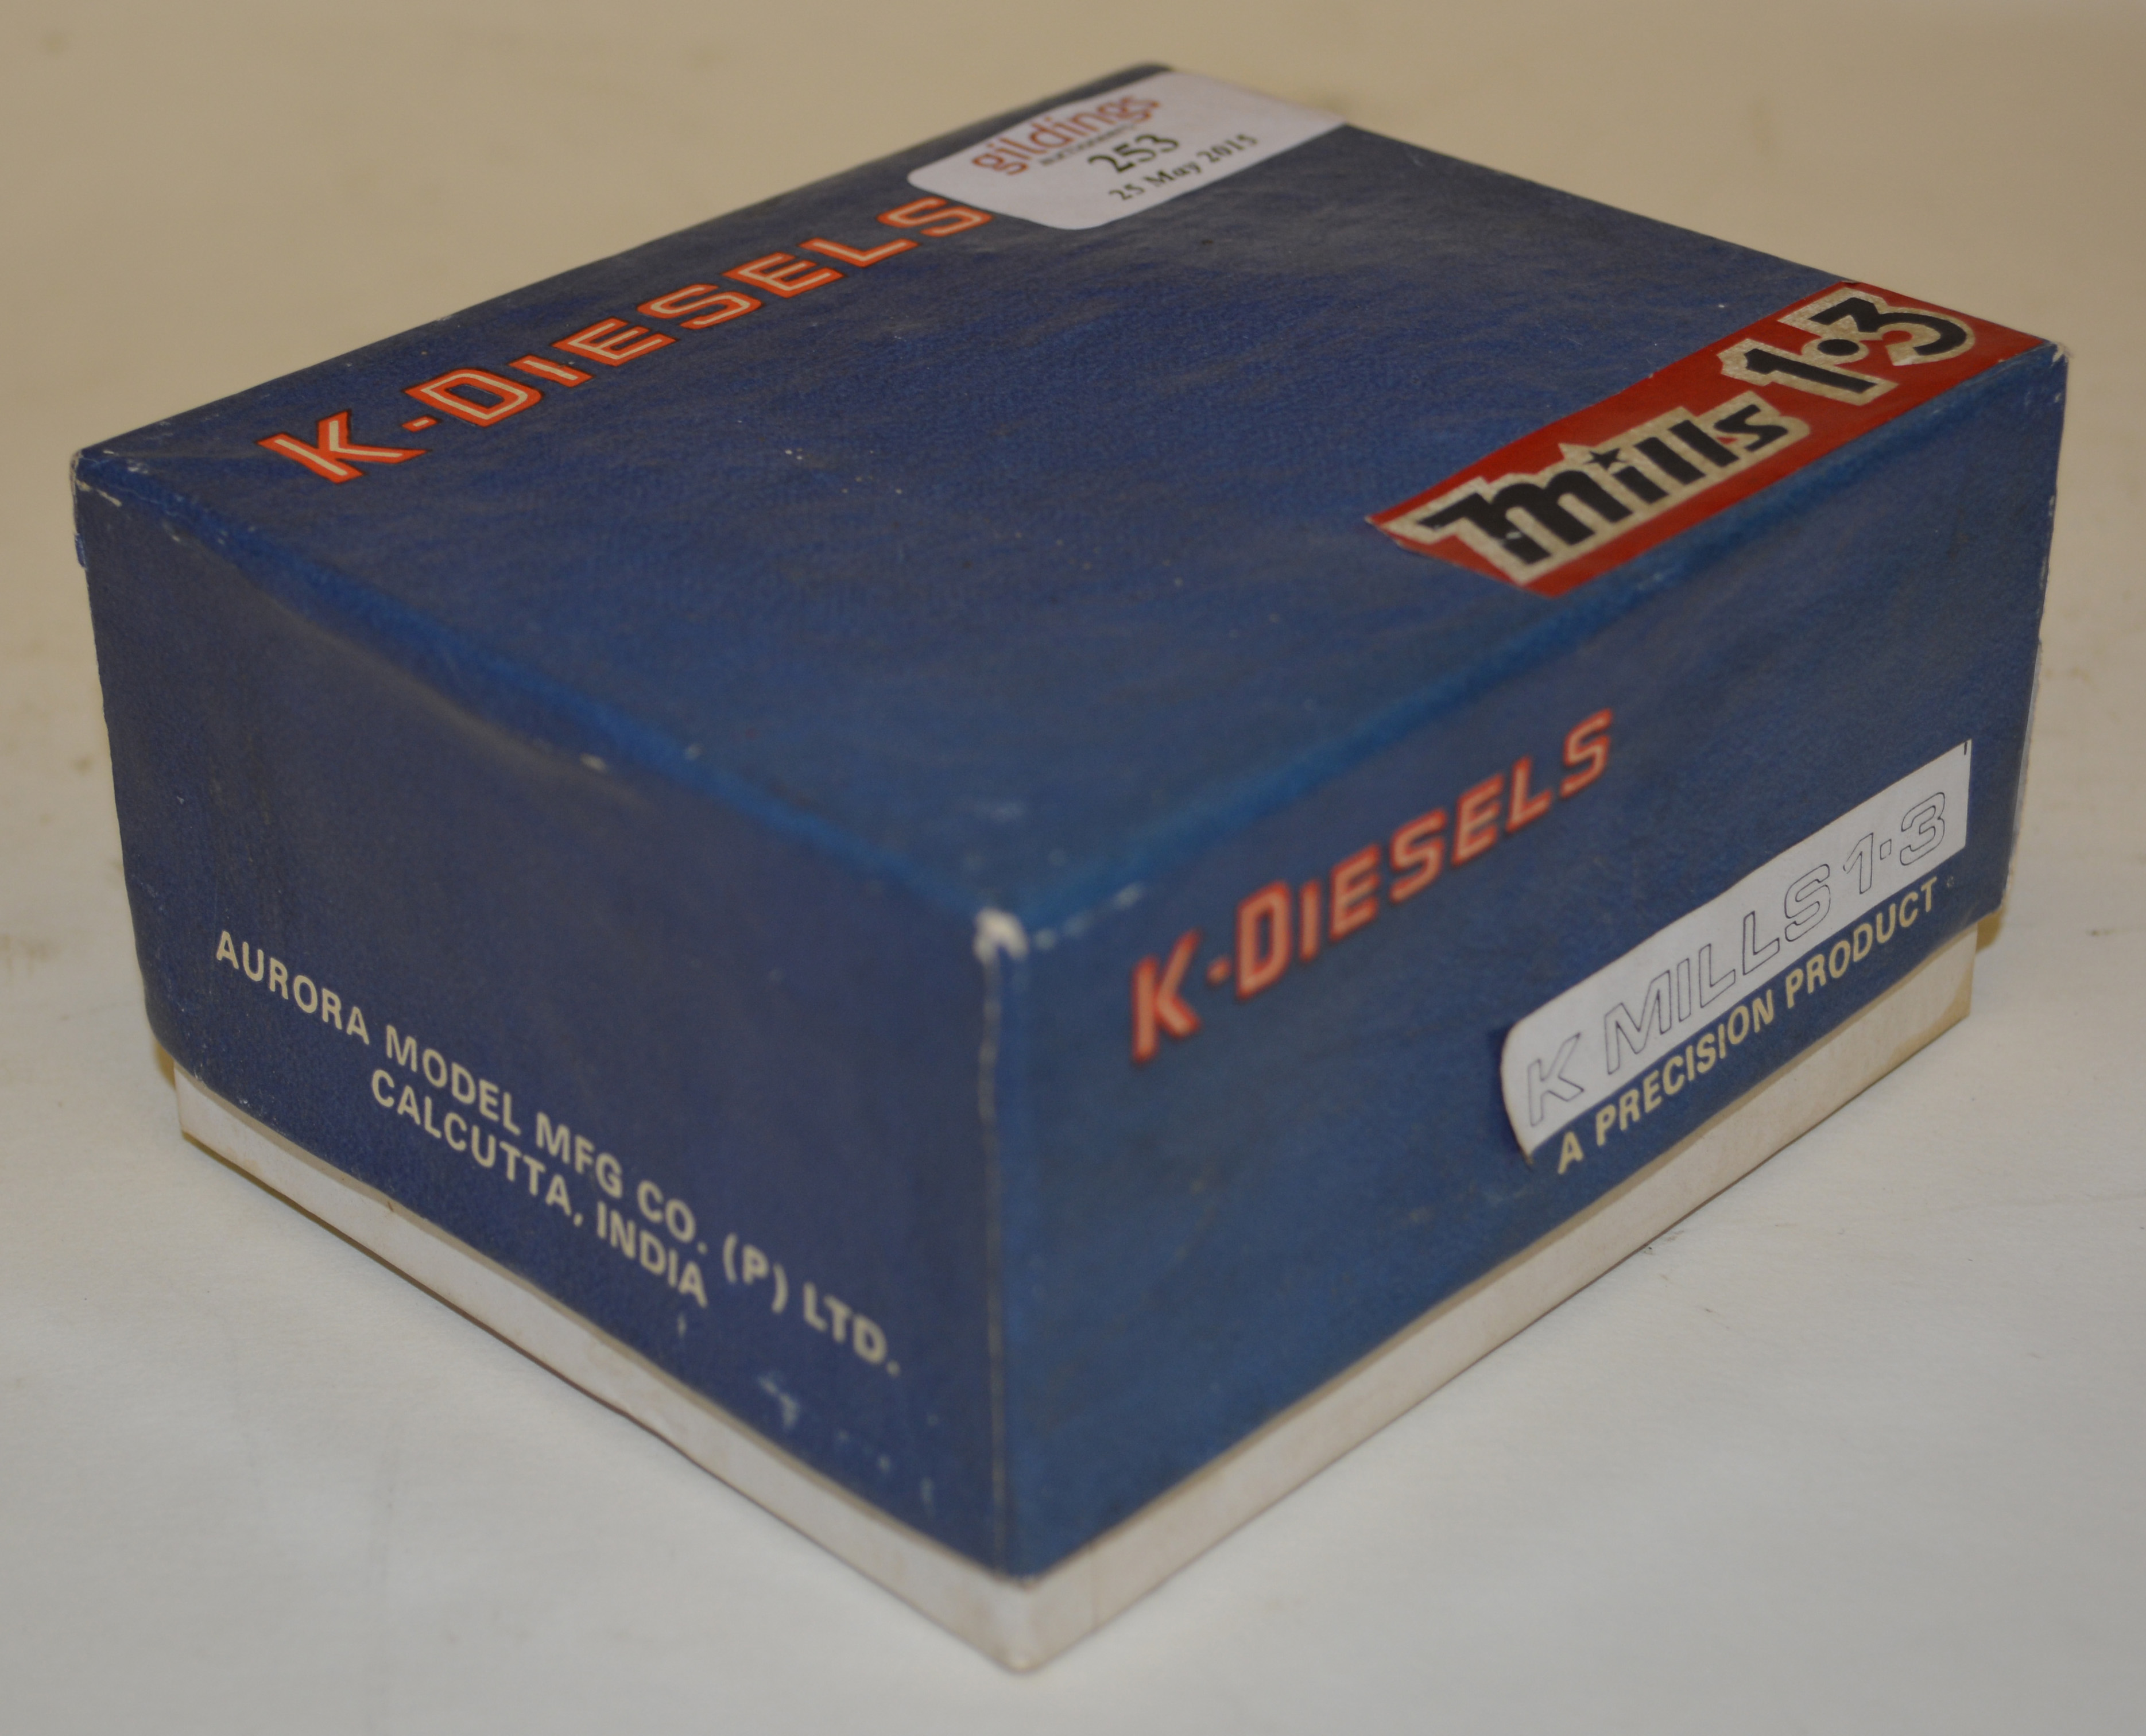 K-Diesels, K Mills 1.3, new in box.